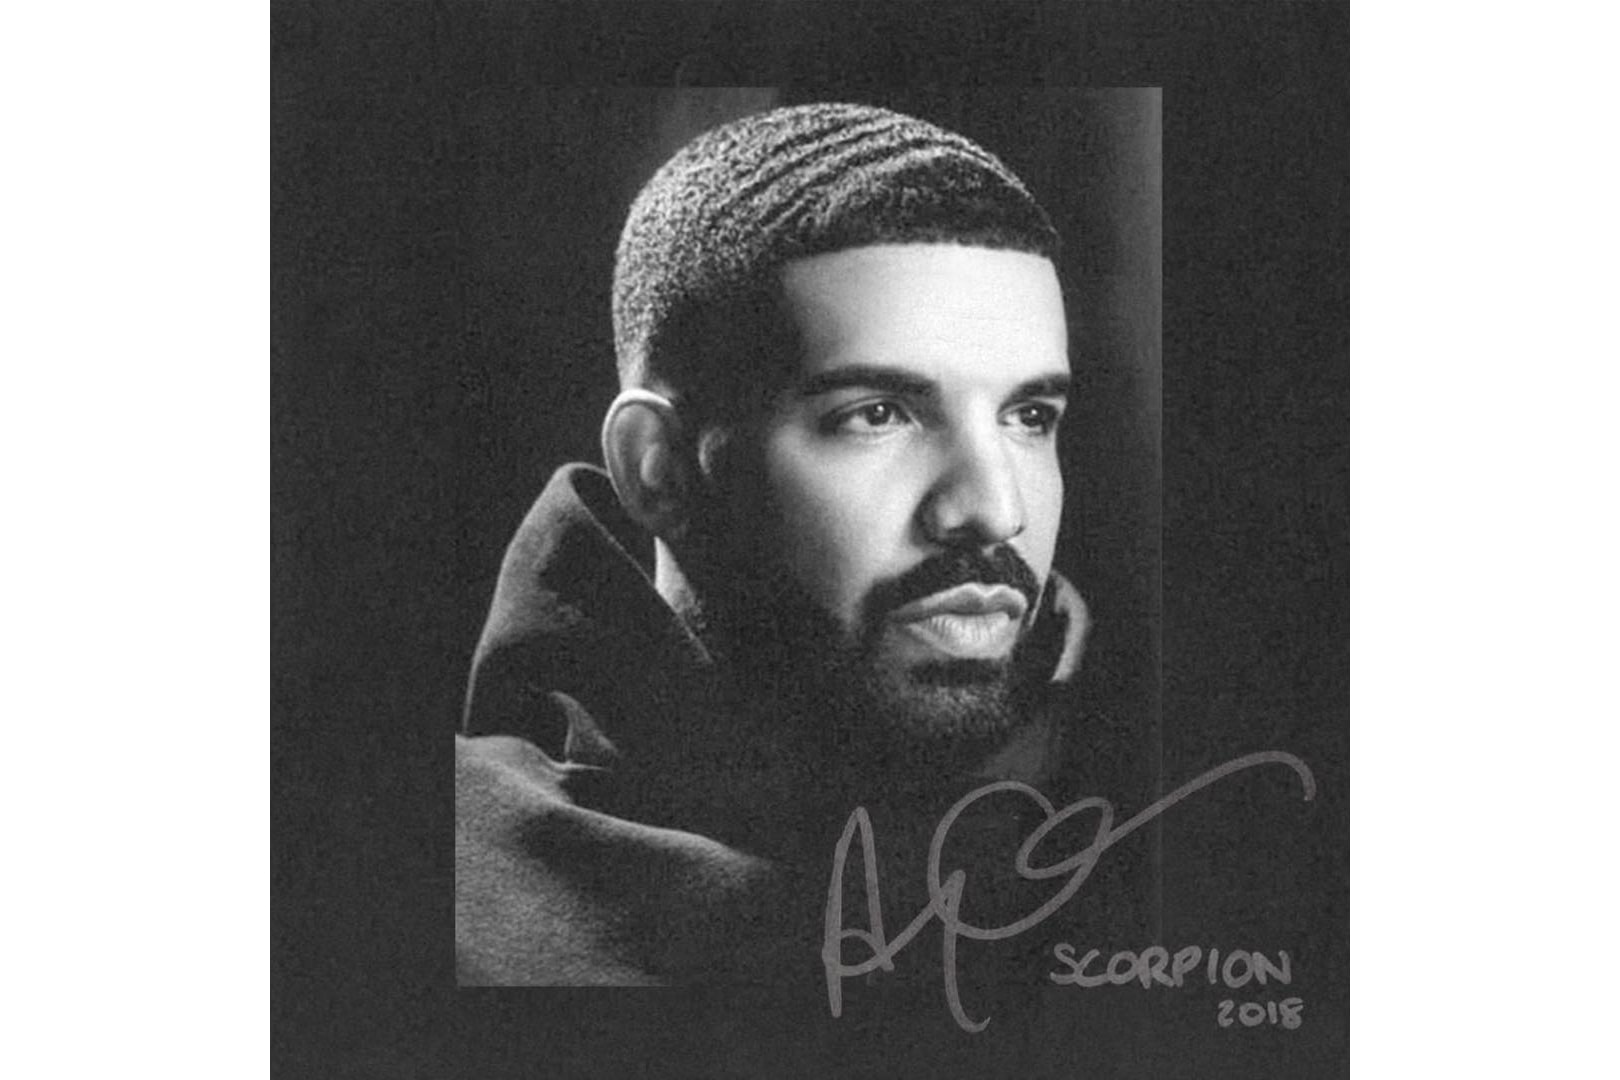 Photo "Scorpion" Drake